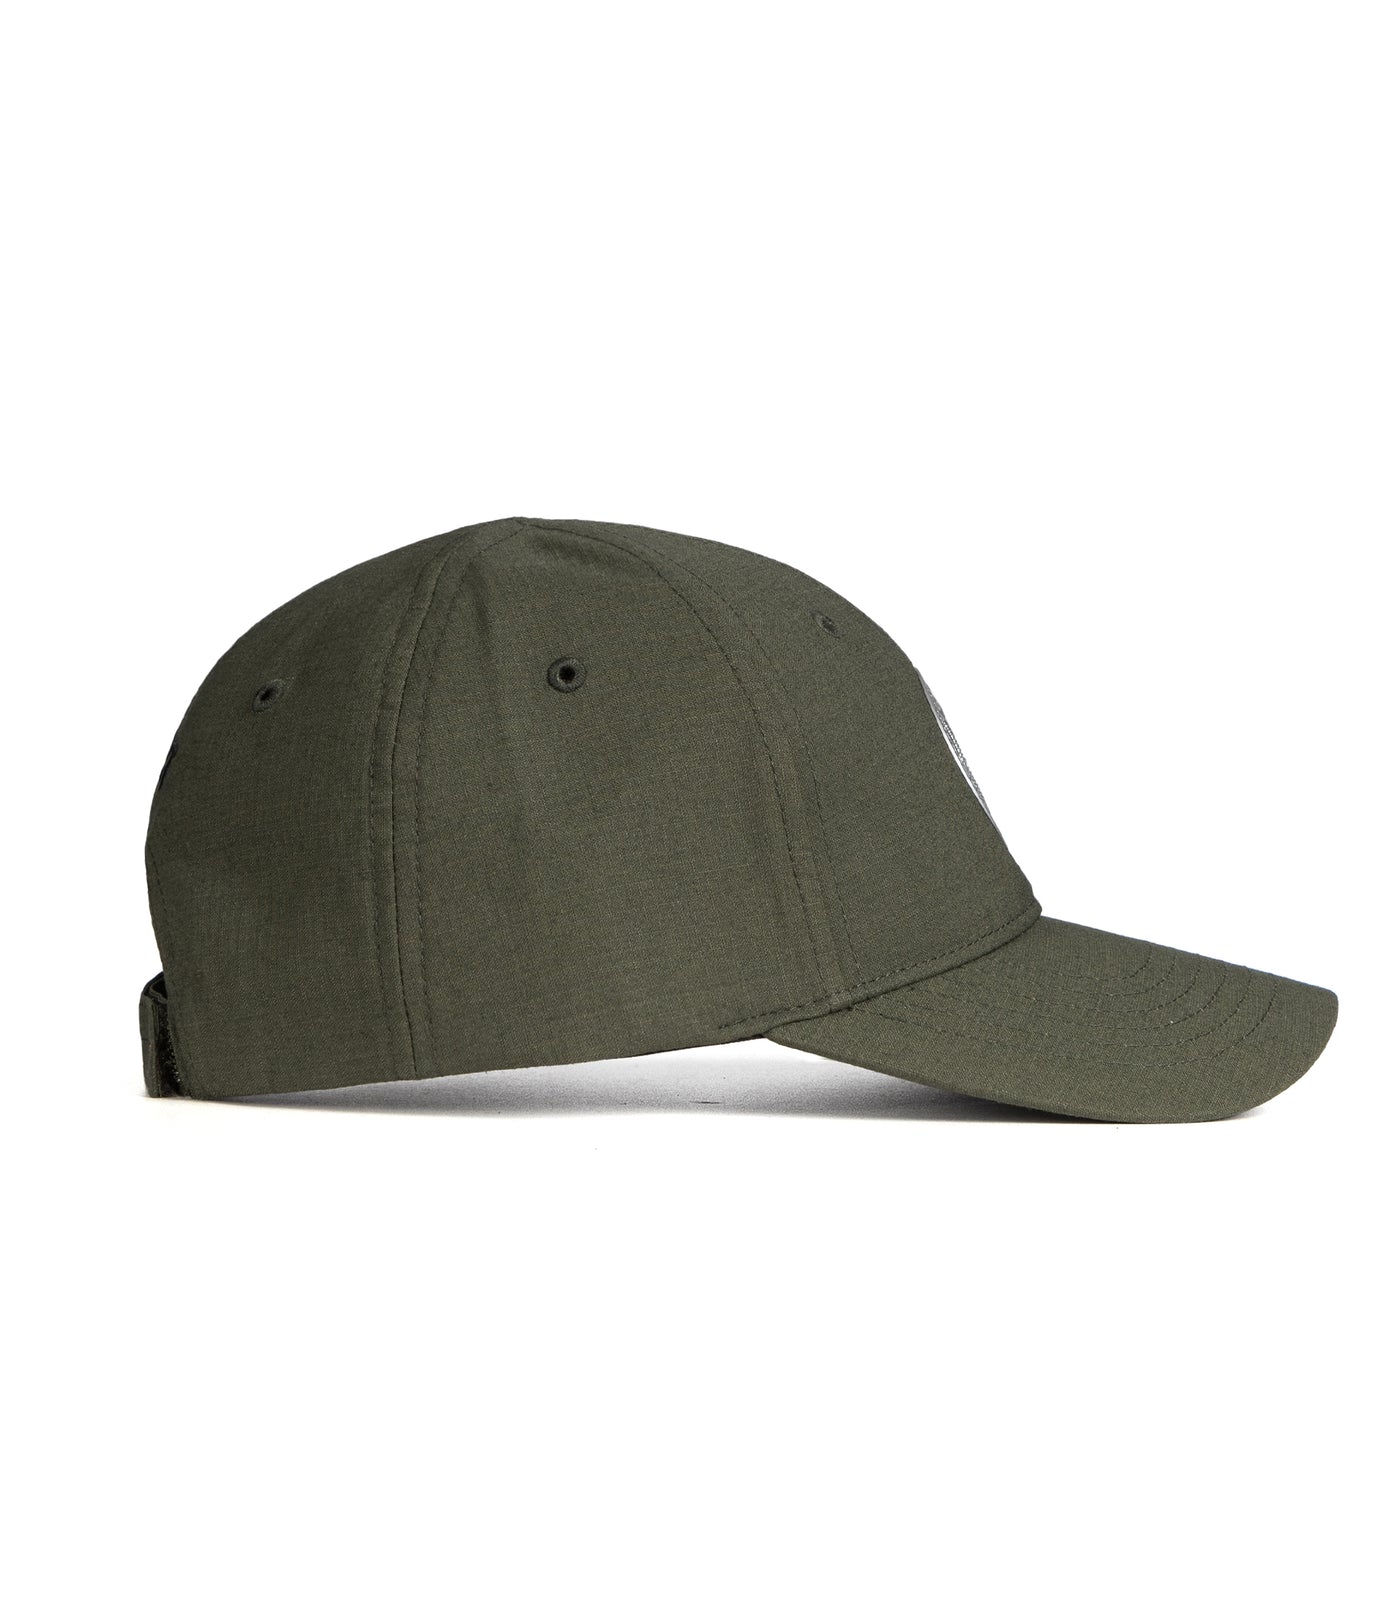 V2 Uniform Hat (SORT)